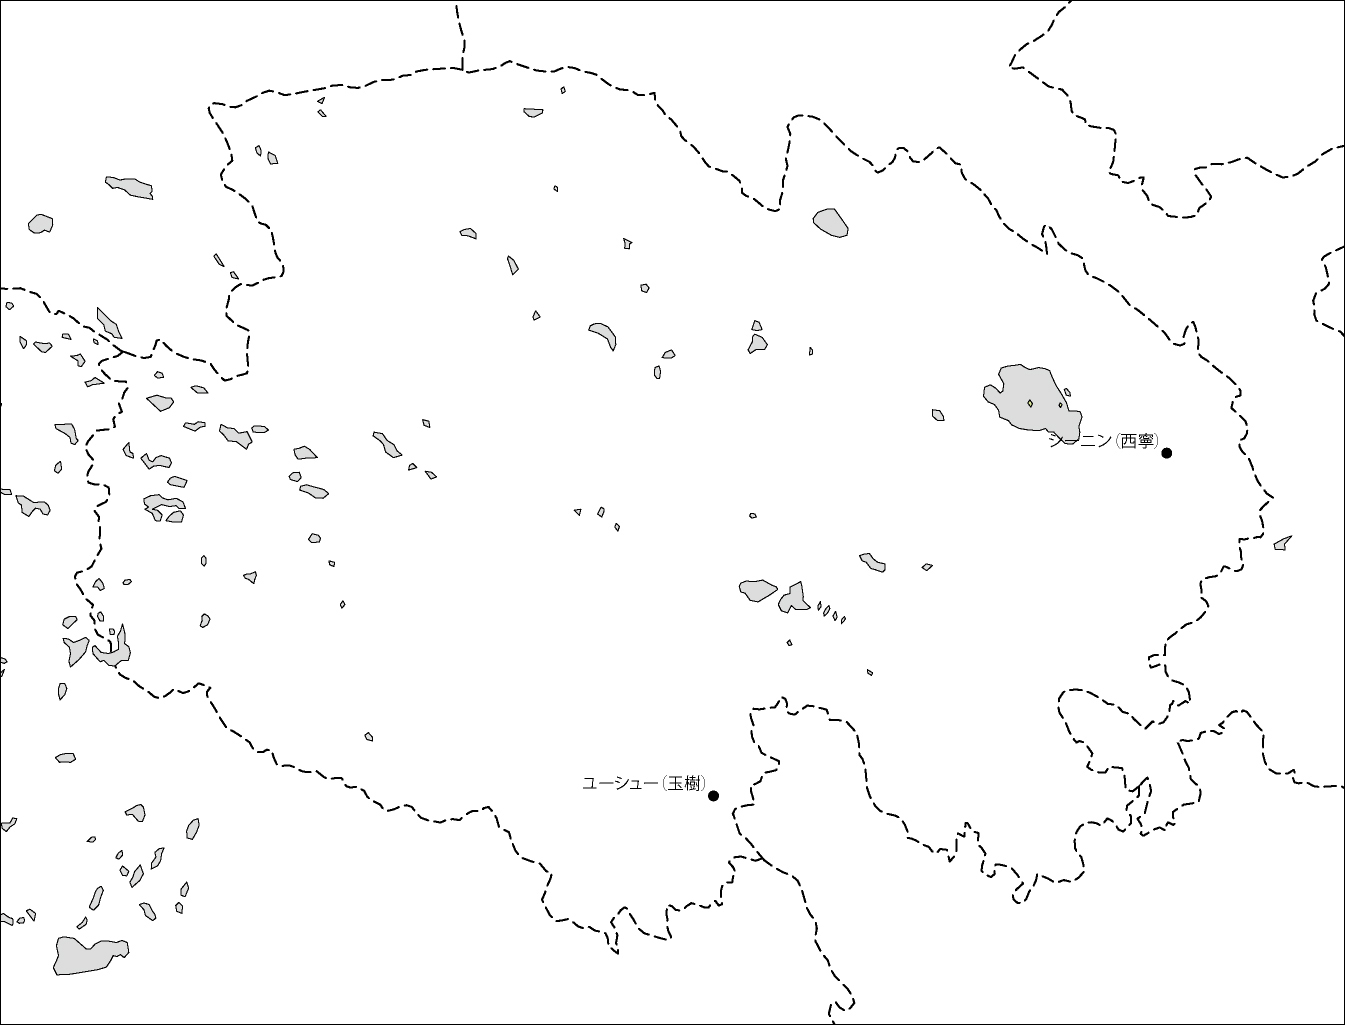 青海省白地図(主な都市あり)のフリーデータの画像